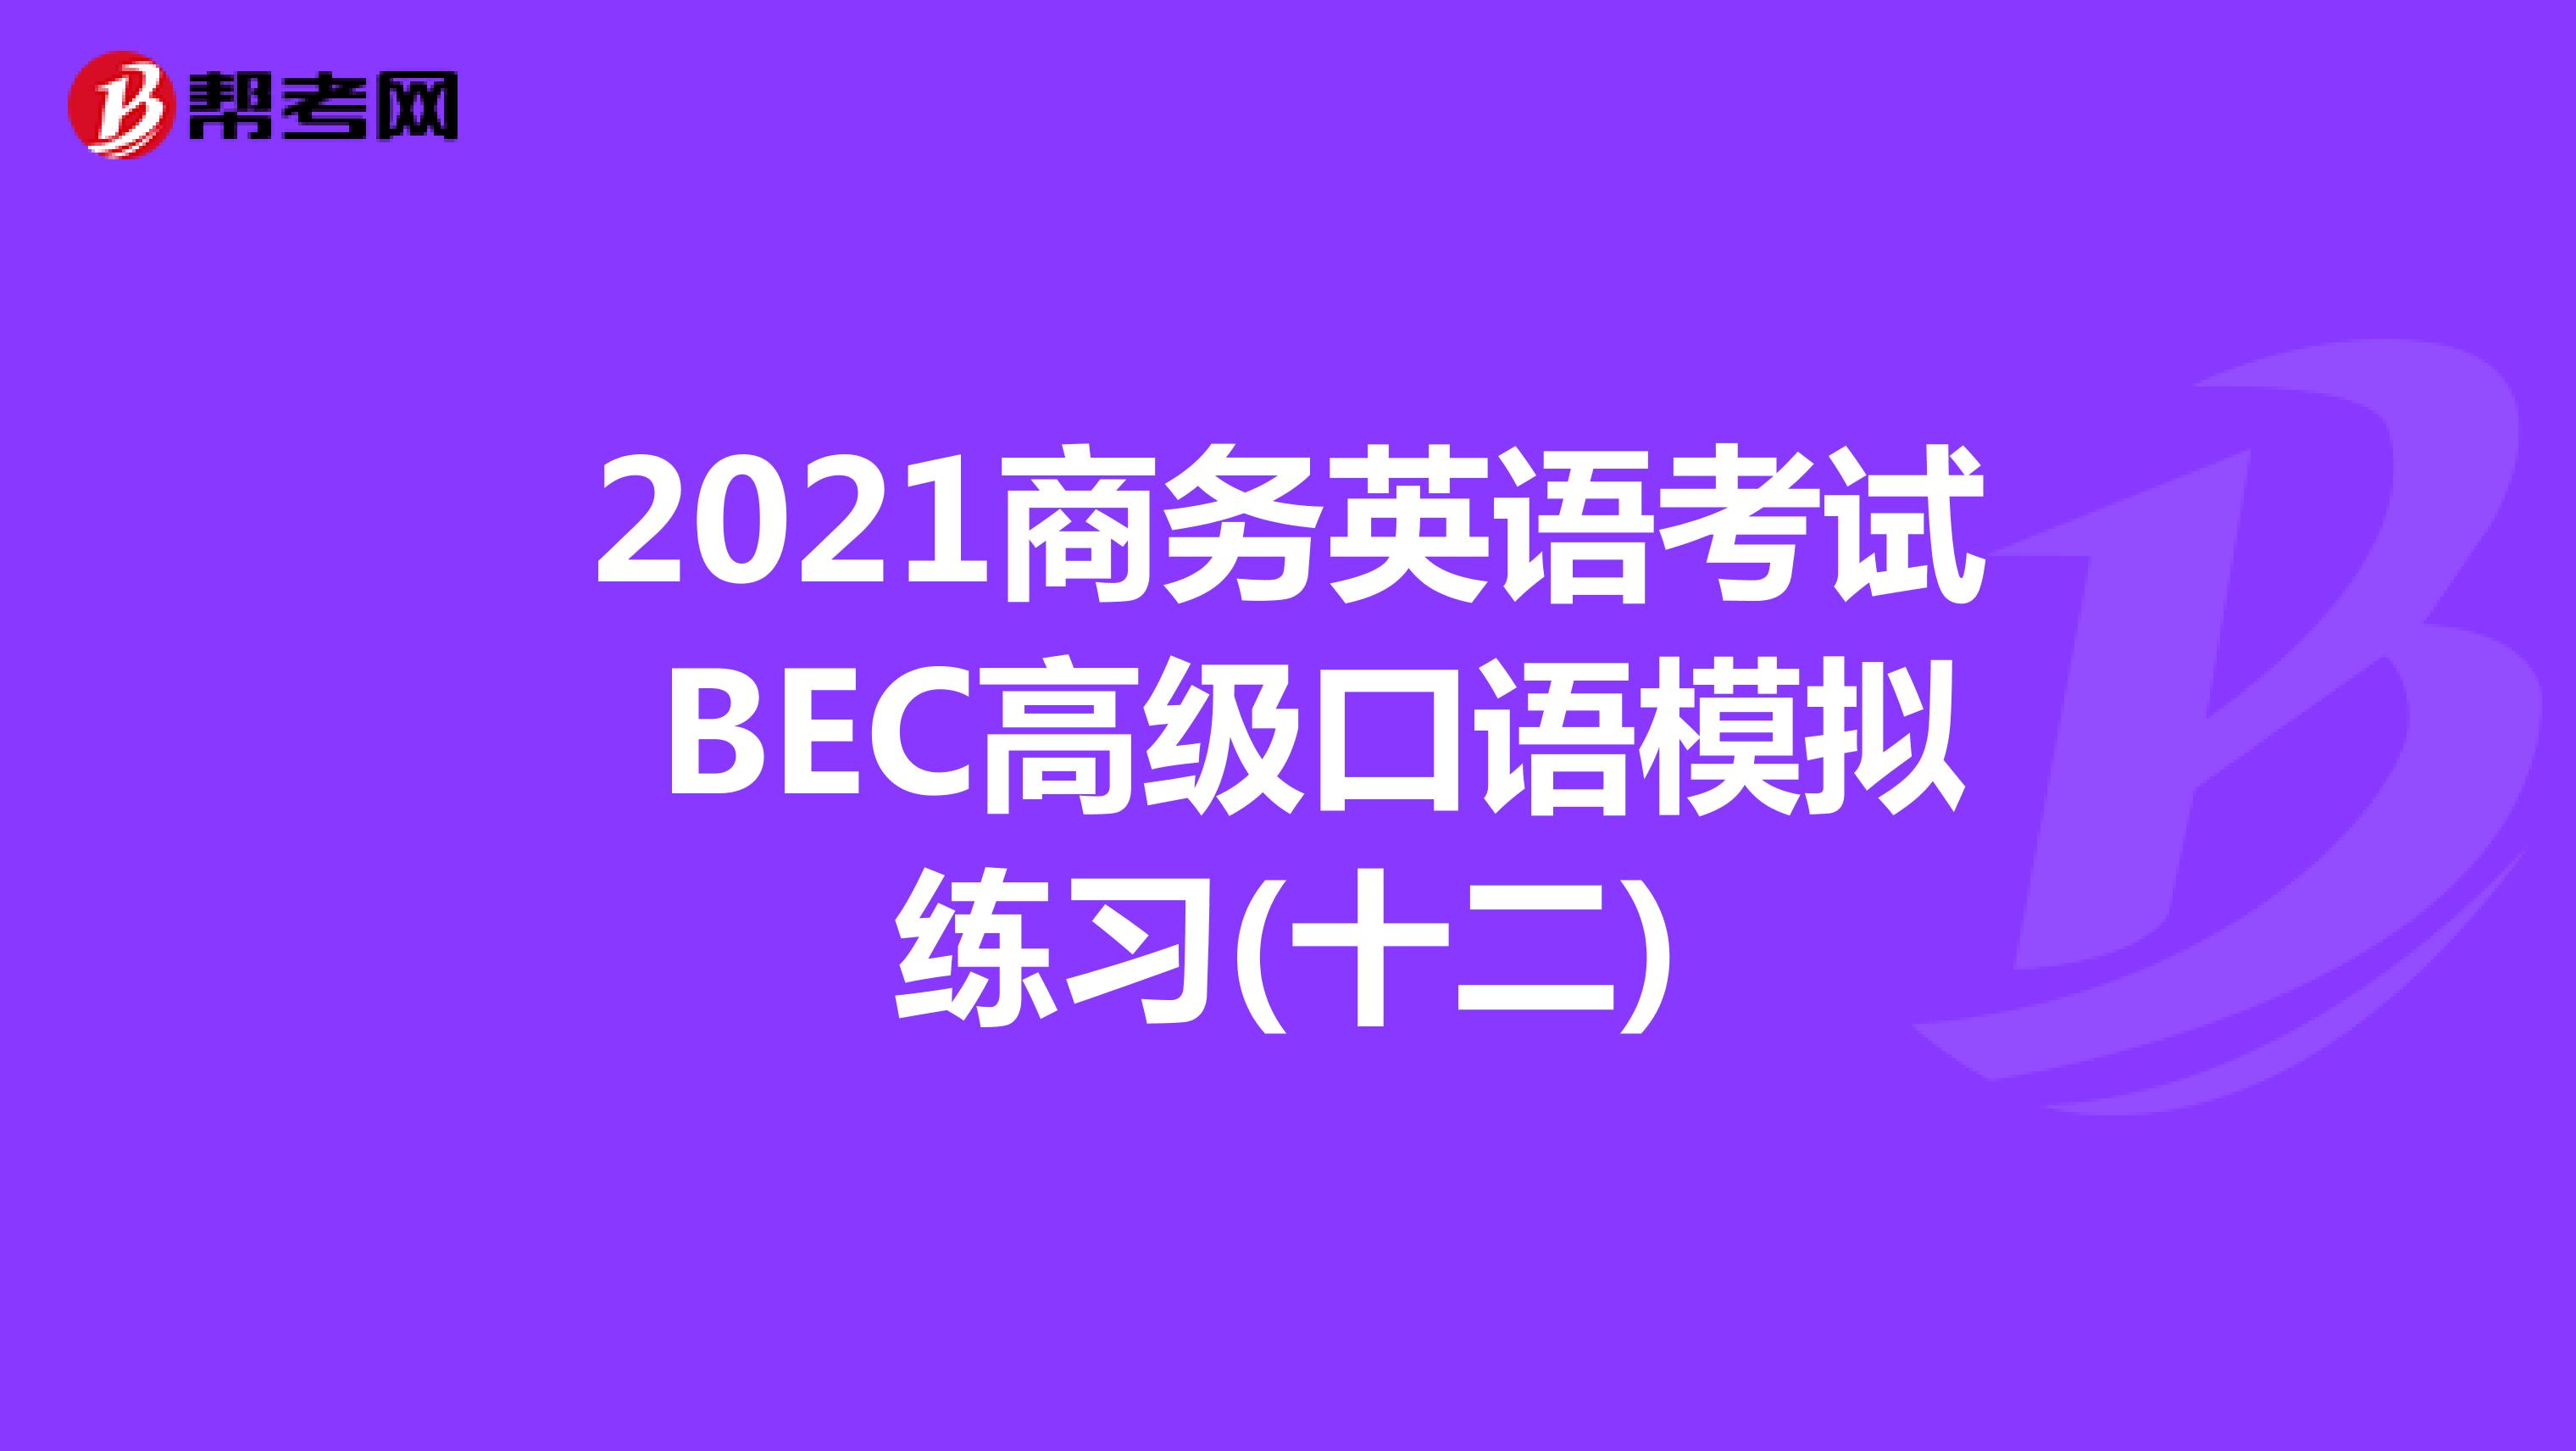 2021年商务英语考试BEC高级口语模拟练习(十二)